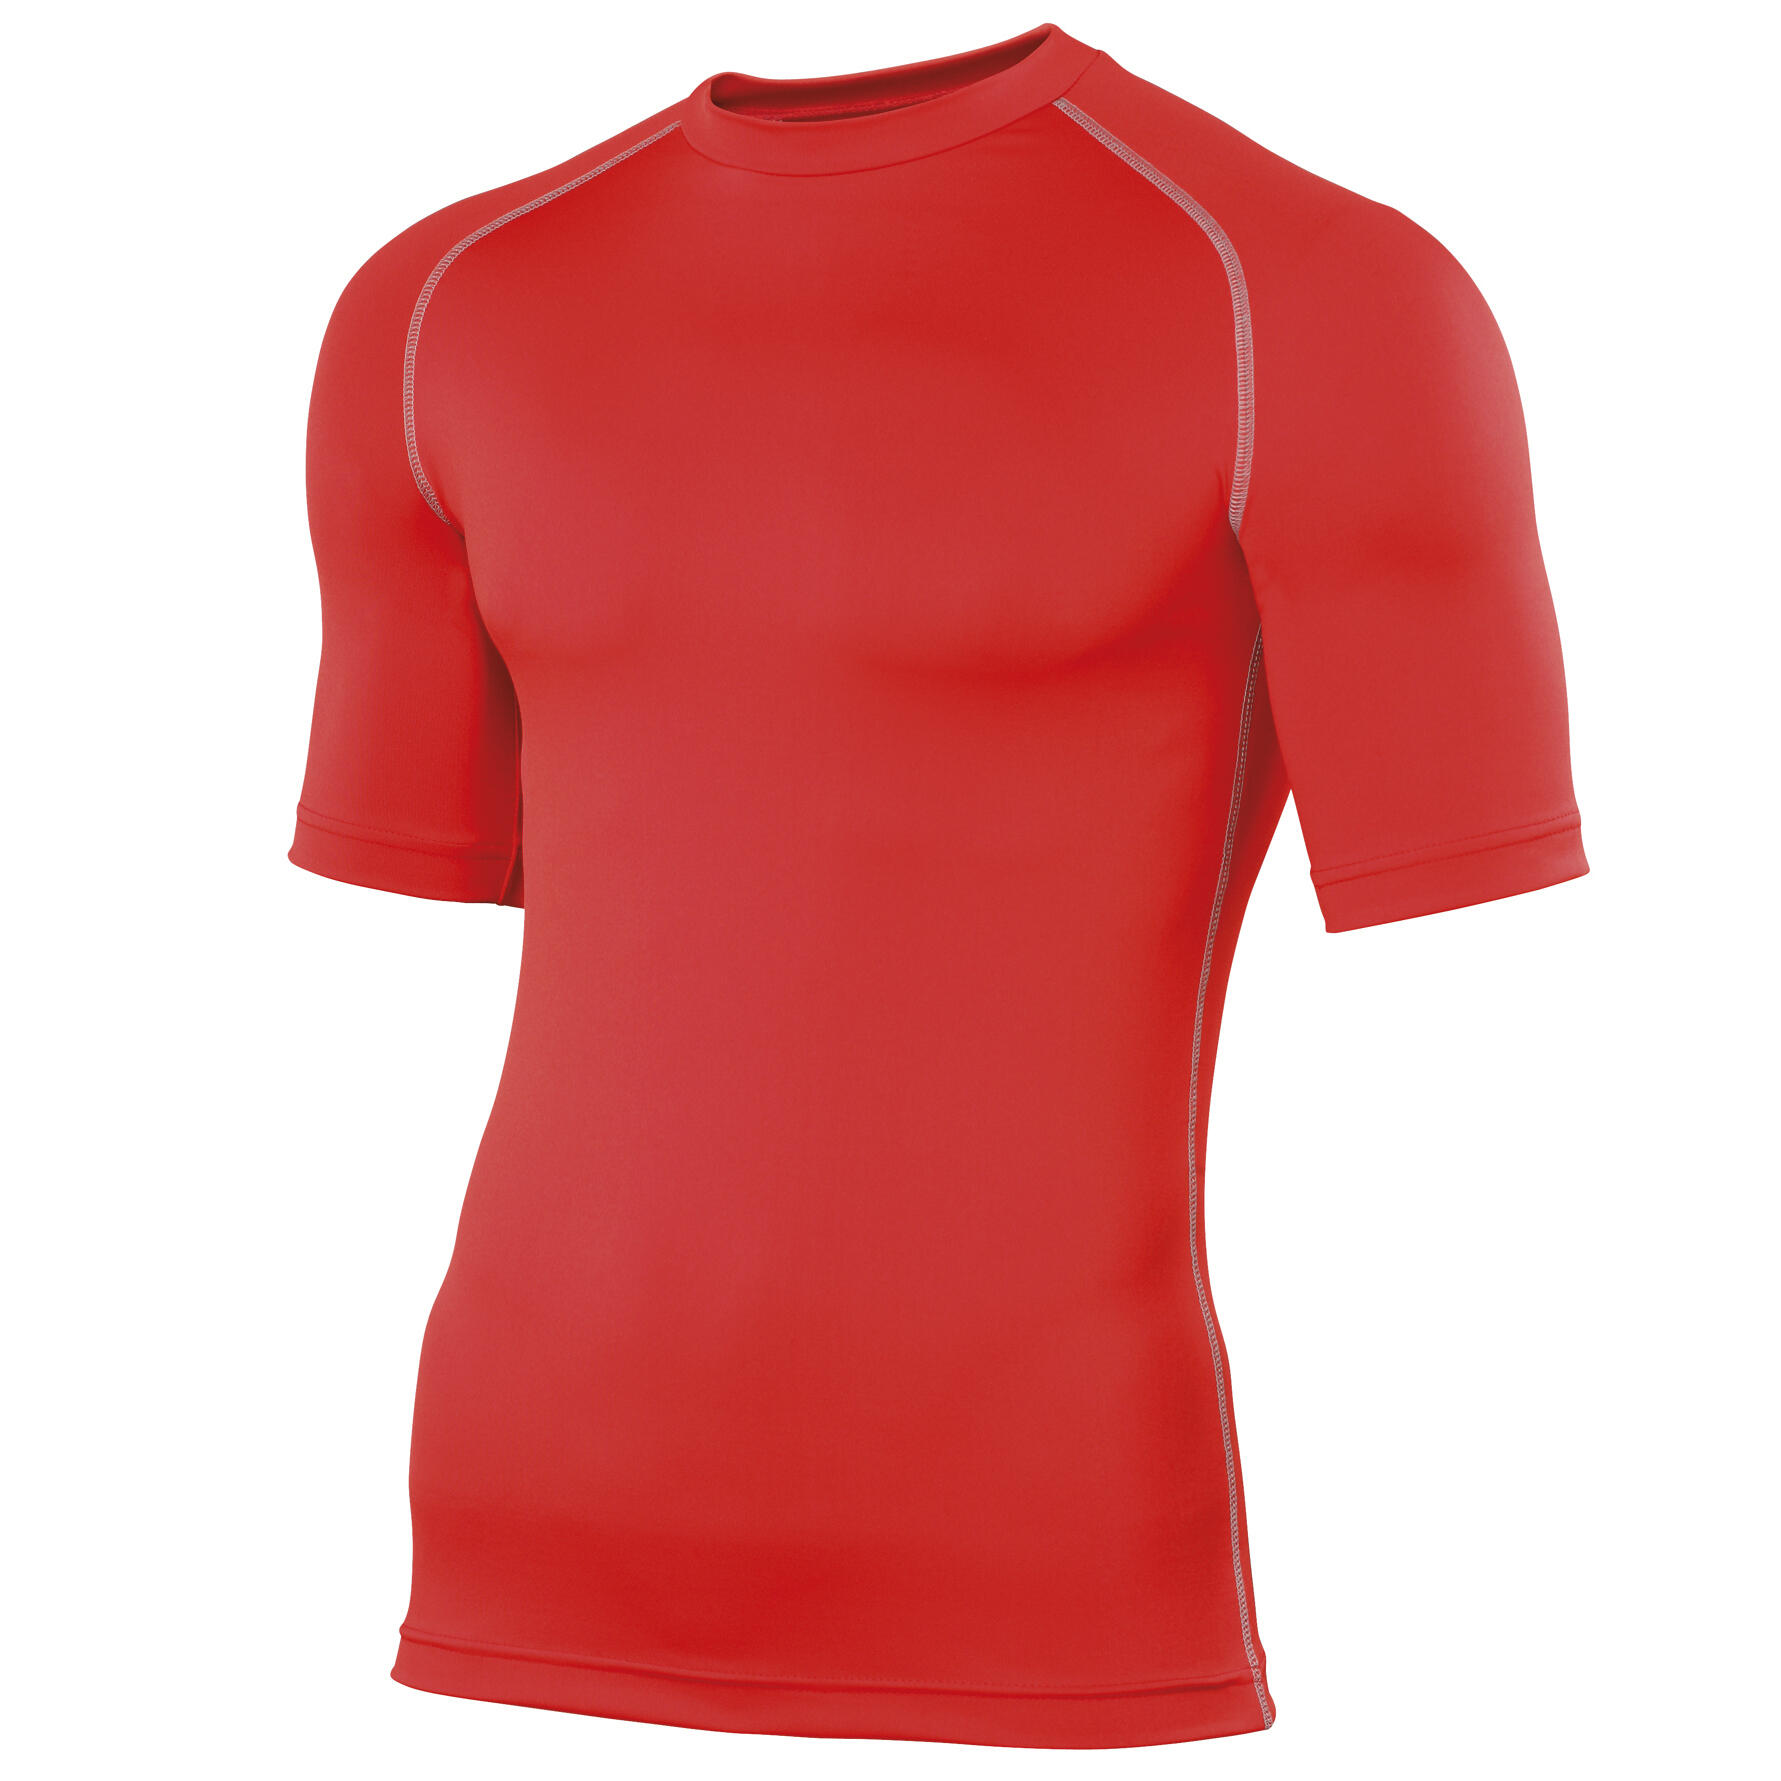 RHINO Mens Sports Base Layer Short Sleeve TShirt (Red)